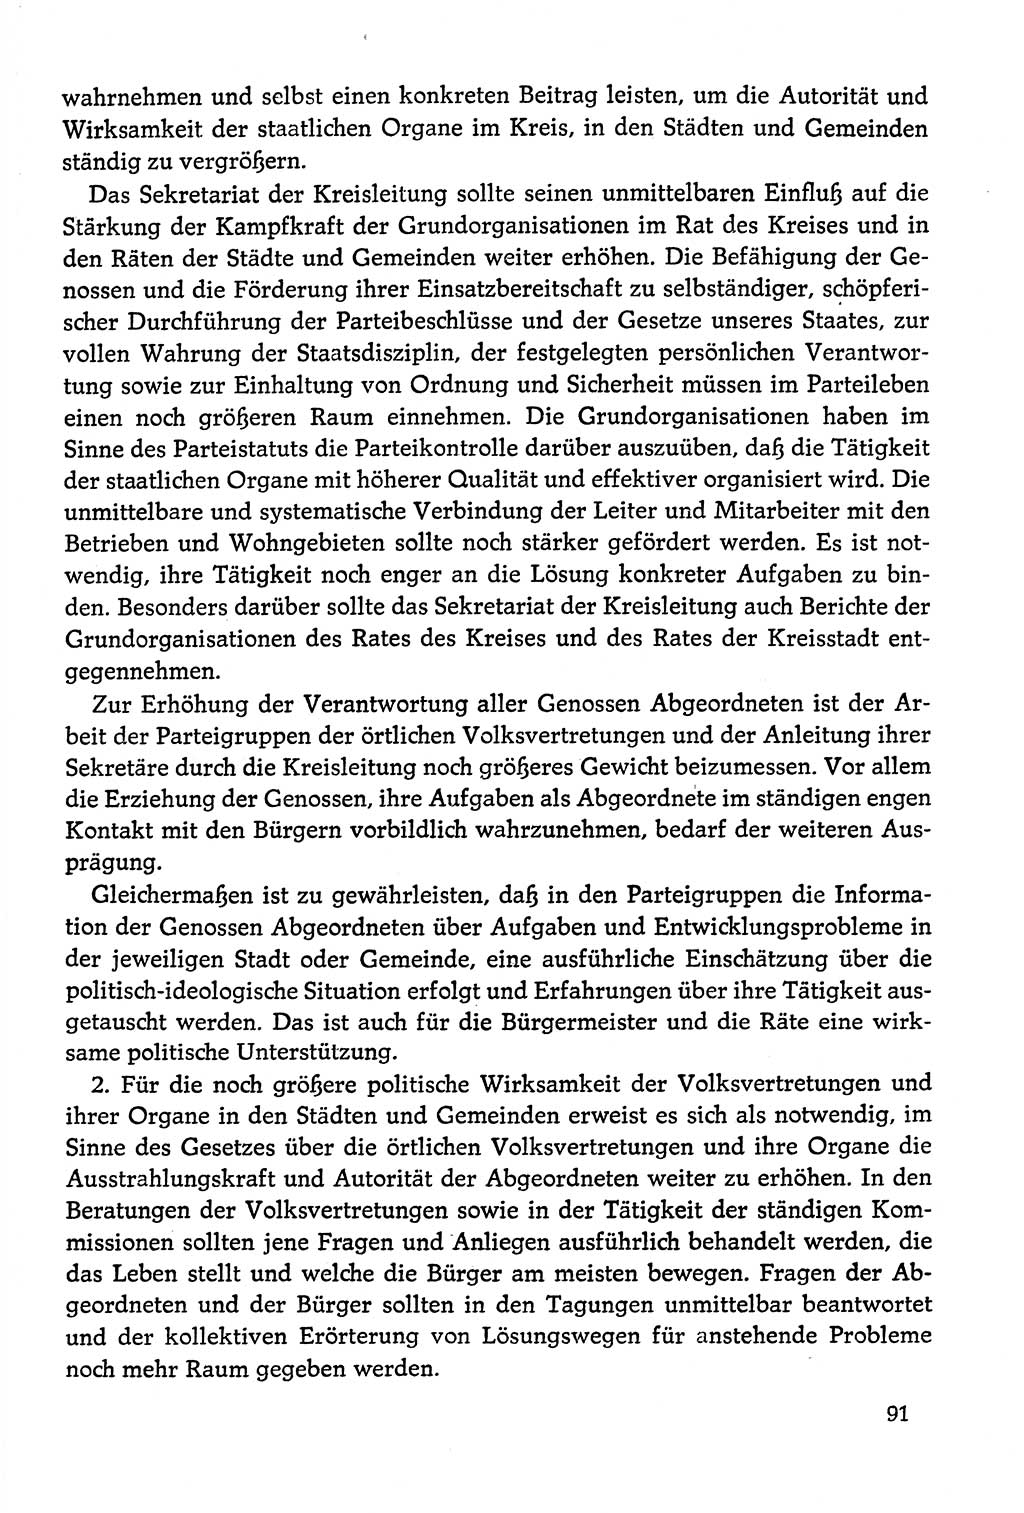 Dokumente der Sozialistischen Einheitspartei Deutschlands (SED) [Deutsche Demokratische Republik (DDR)] 1978-1979, Seite 91 (Dok. SED DDR 1978-1979, S. 91)